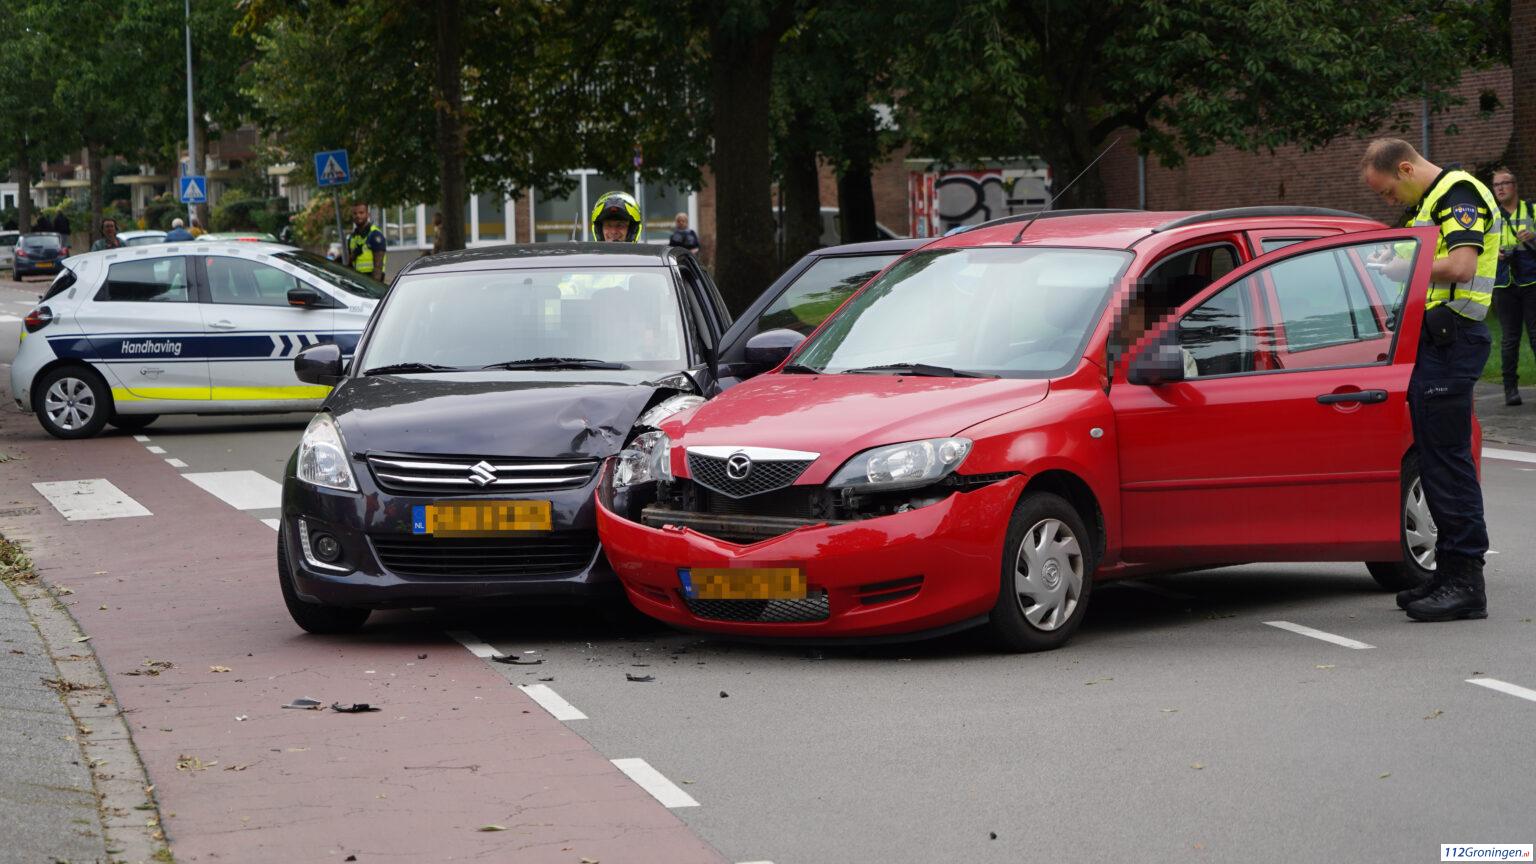 Ongeval op de Van Iddekingeweg/ Hora Siccamasingel in Groningen.